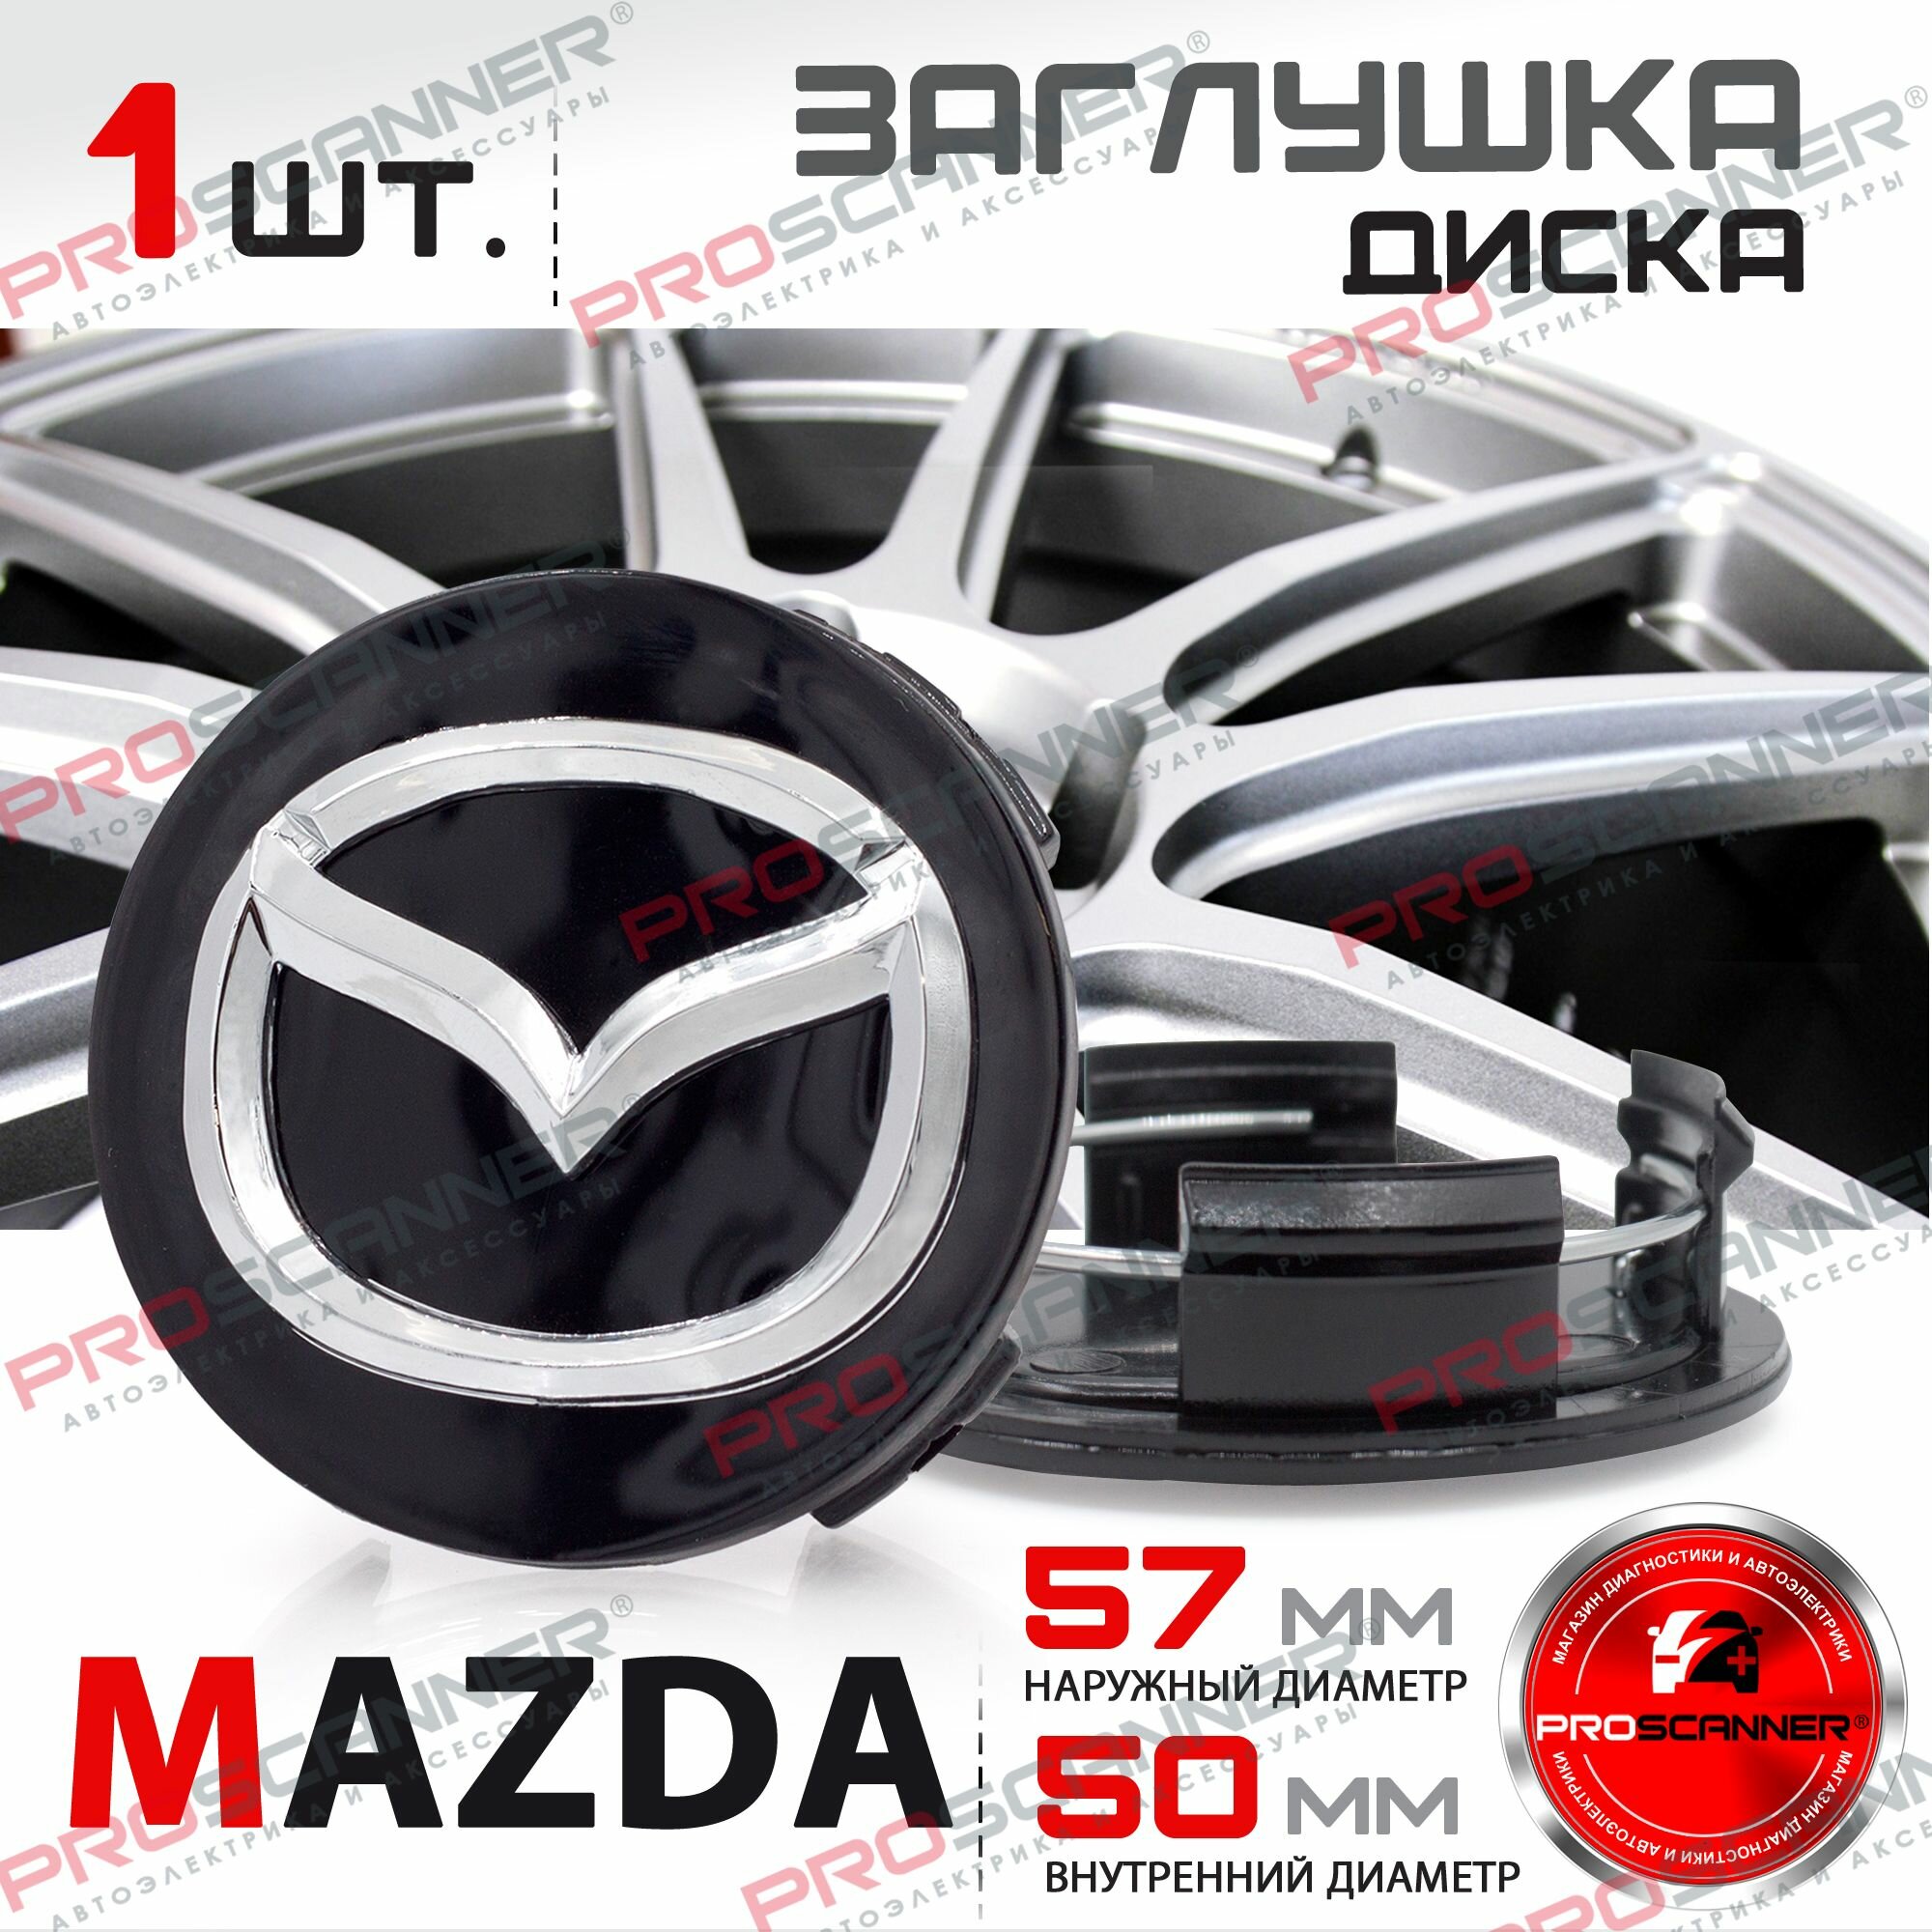 Колпачок заглушка на литой диск колеса для Mazda Мазда 57 мм - 1 штука, черный